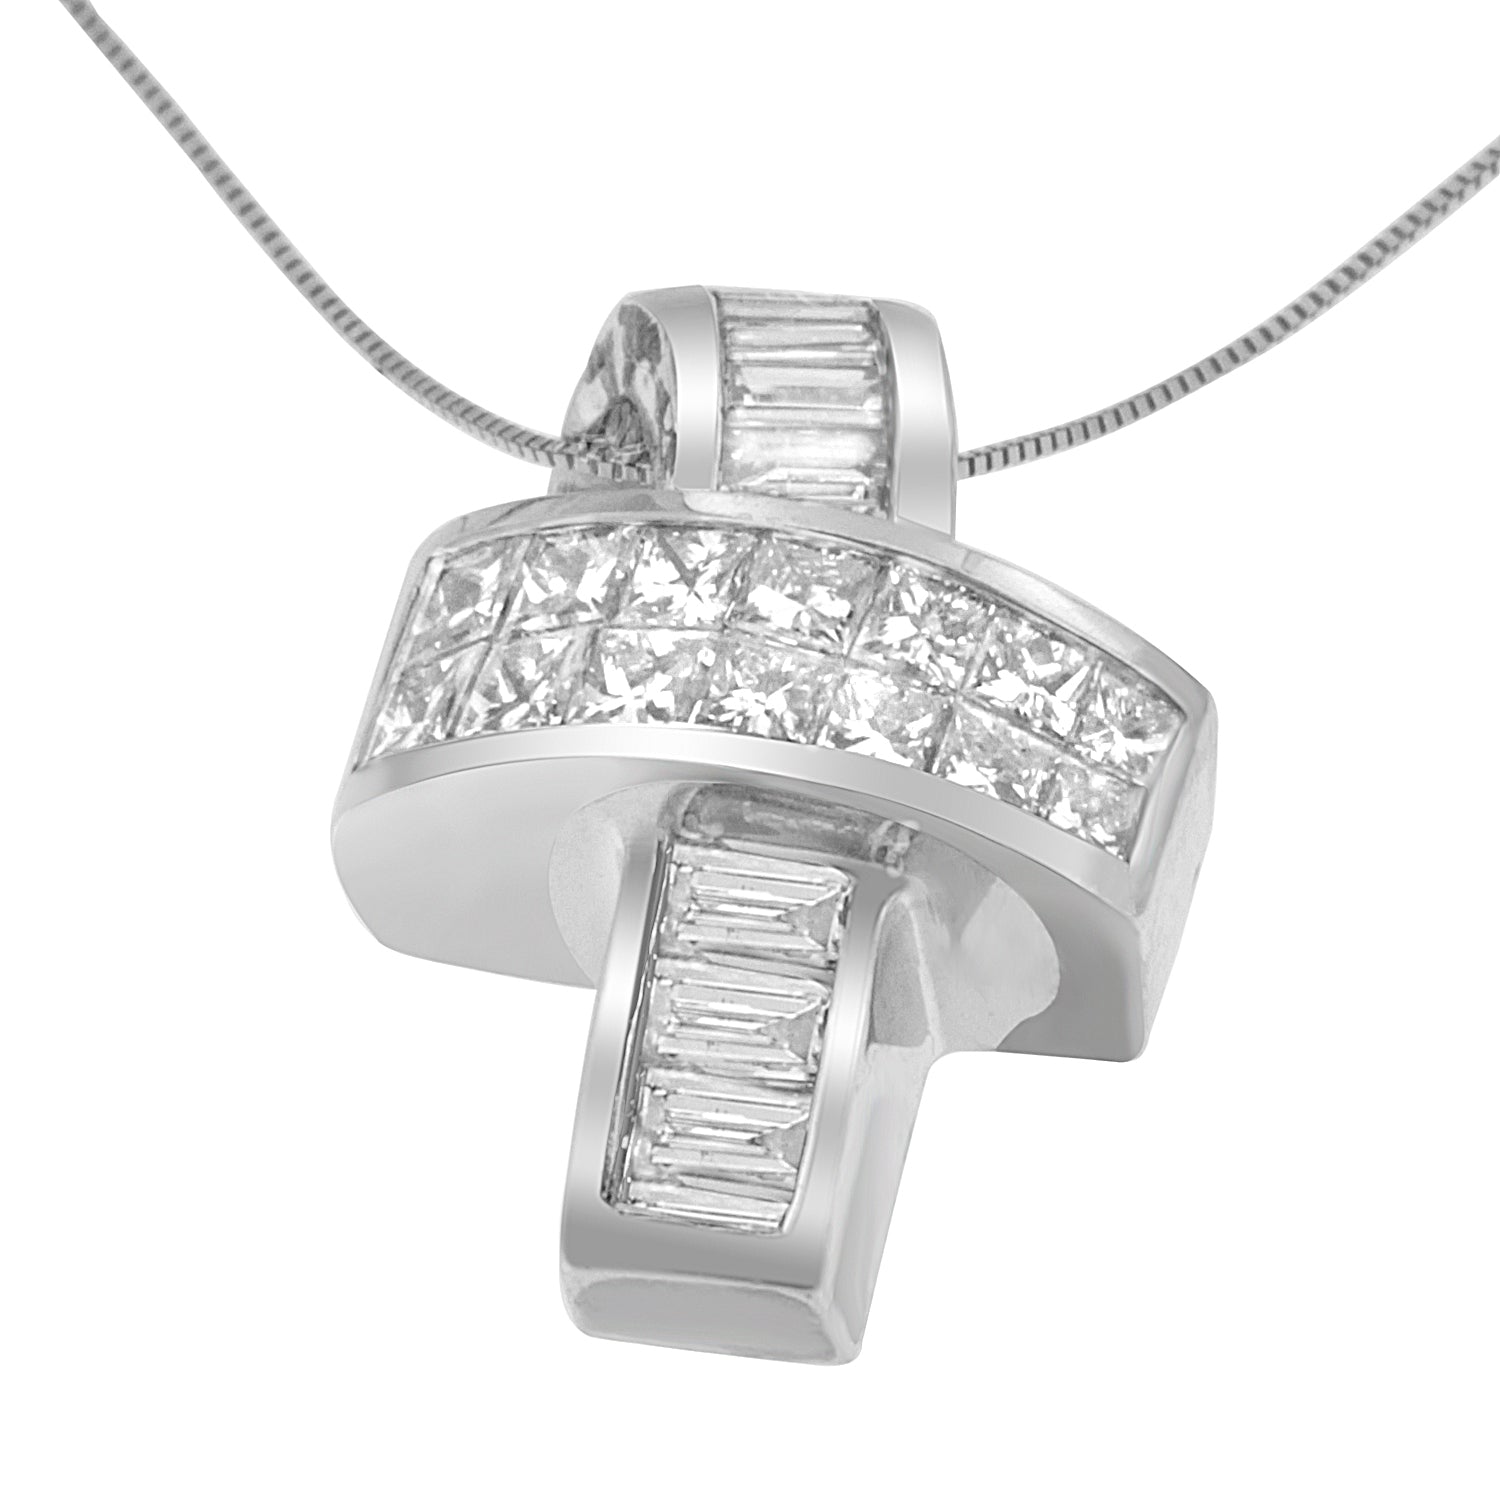 14K White Gold 2 cttw Princess and Baguette Cut Diamond Ribbon Pendant Necklace